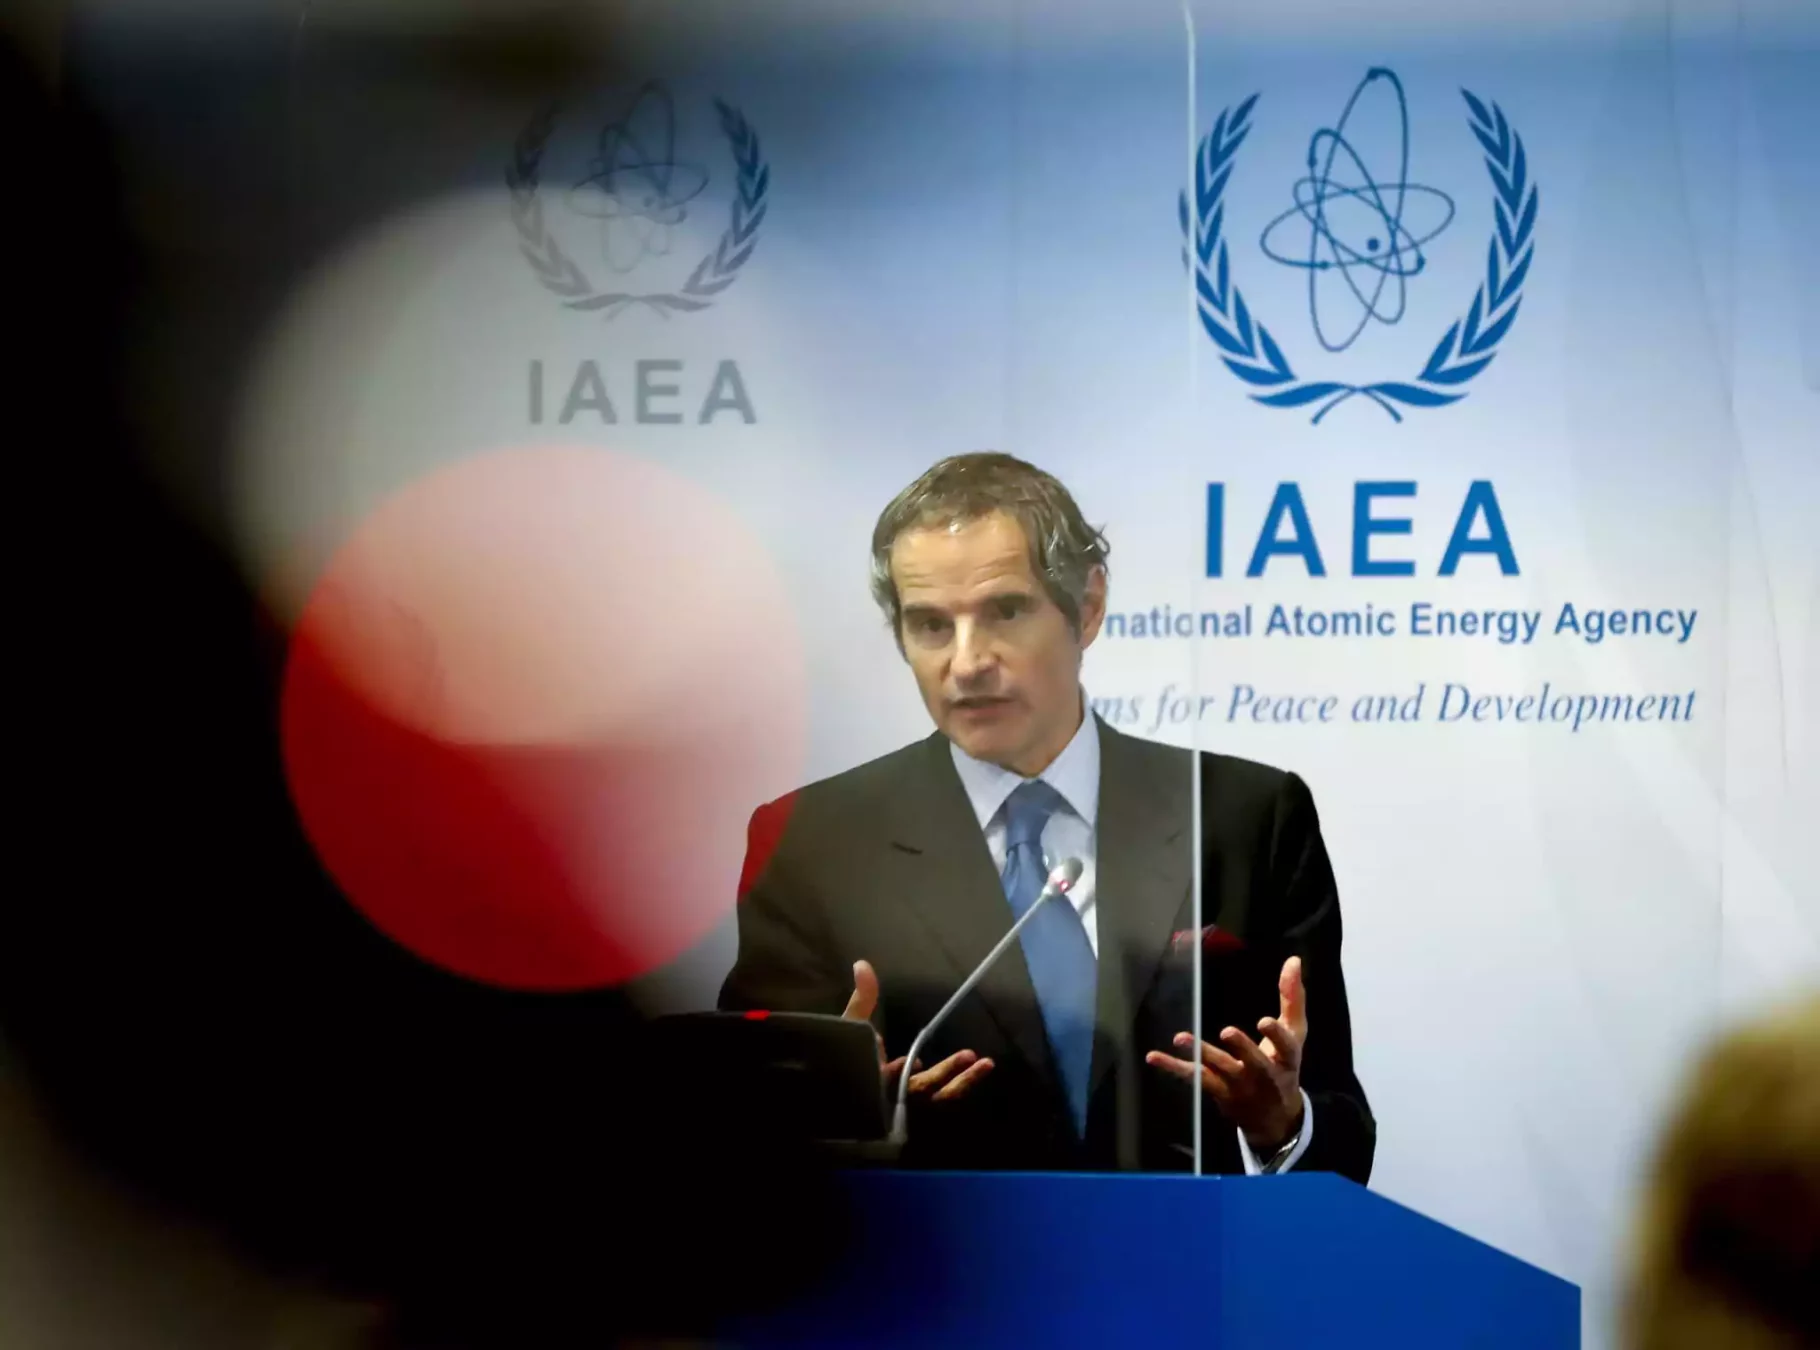 El director general del Organismo Internacional de Energía Atómica, Rafael Mariano Grossi, se dirige a los medios de comunicación durante una conferencia de prensa sobre la supervisión del programa de energía nuclear de Irán por parte del organismo en el Centro Internacional de Viena, Austria, el lunes 7 de junio de 2021. (AP Photo/Lisa Leutner)